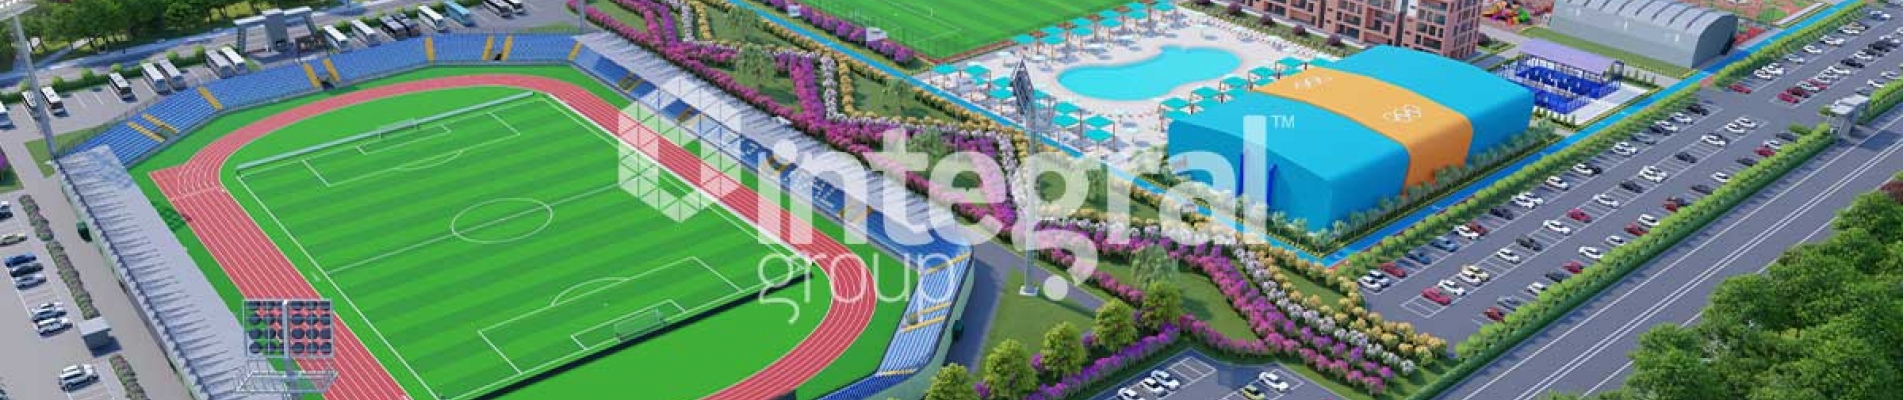 La Construction d'un Complexe Sportif (Nouveau Projet)